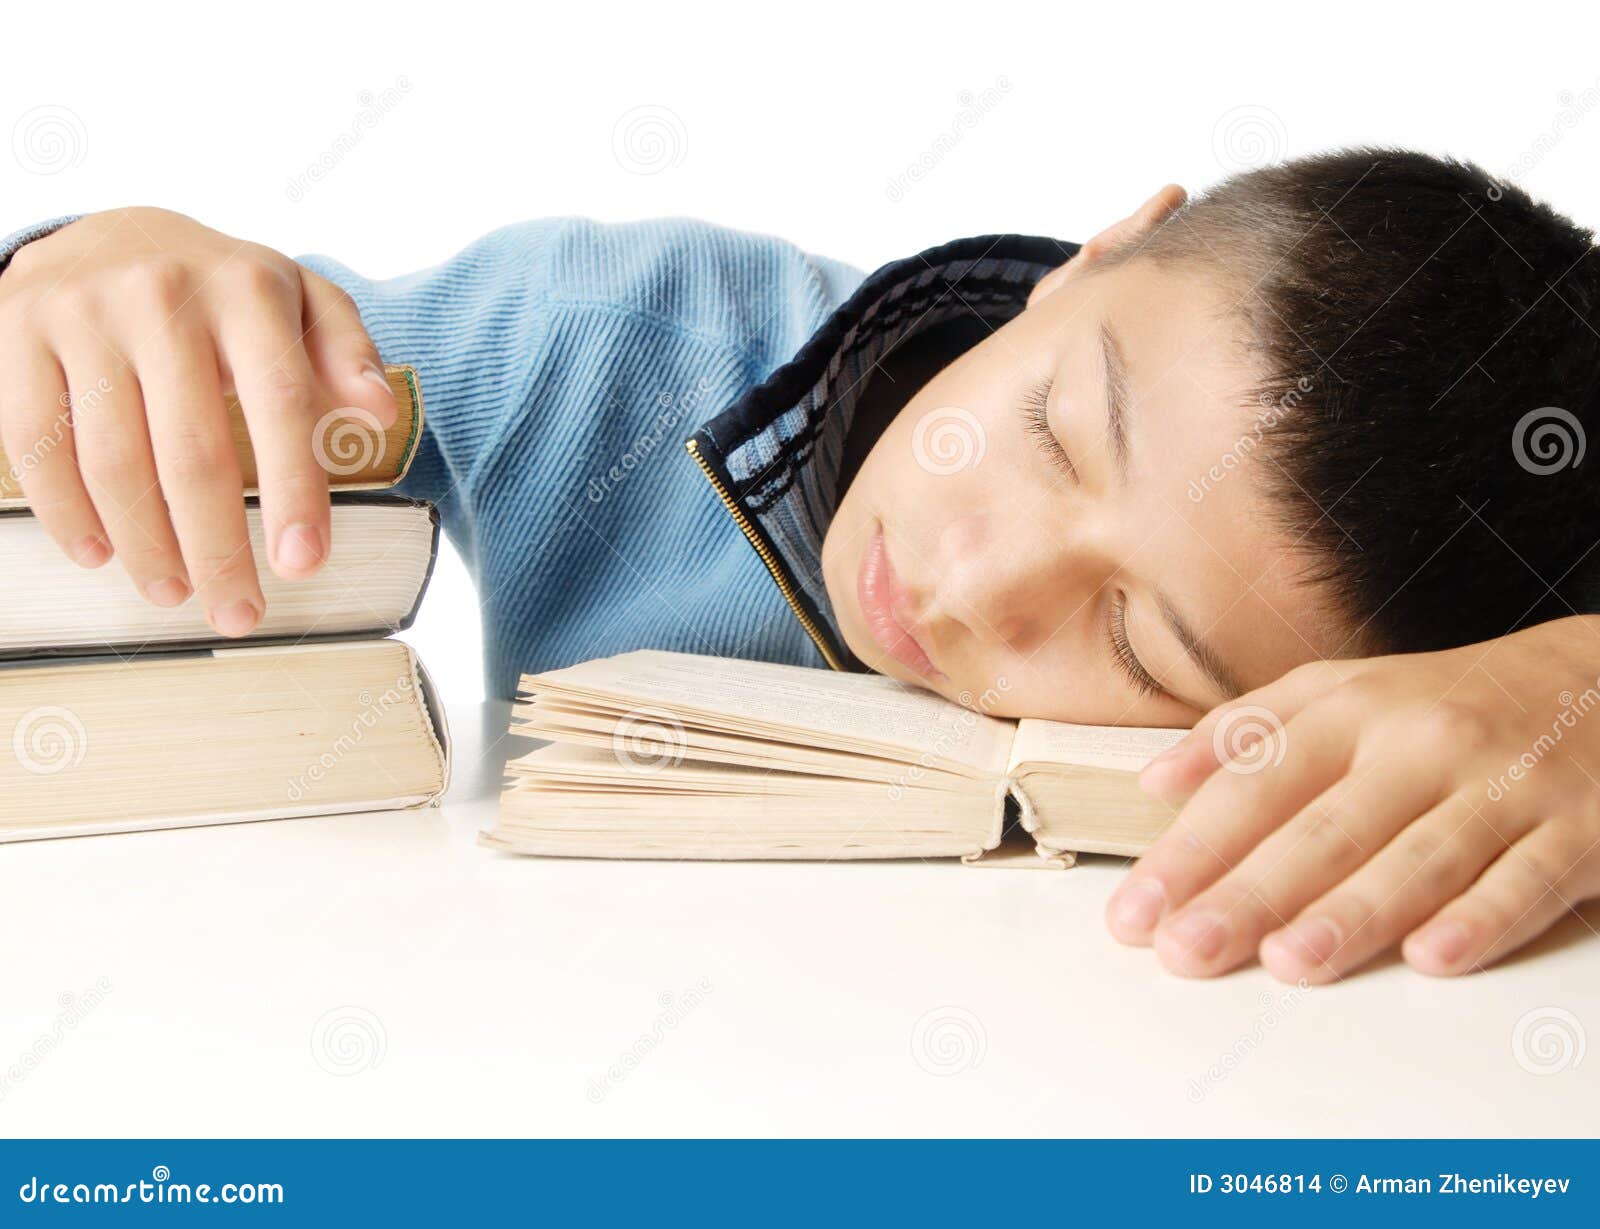 Спать или читать. Читал и заснул. Уснул читая. Читать и спать. Чтение заснул картинки.